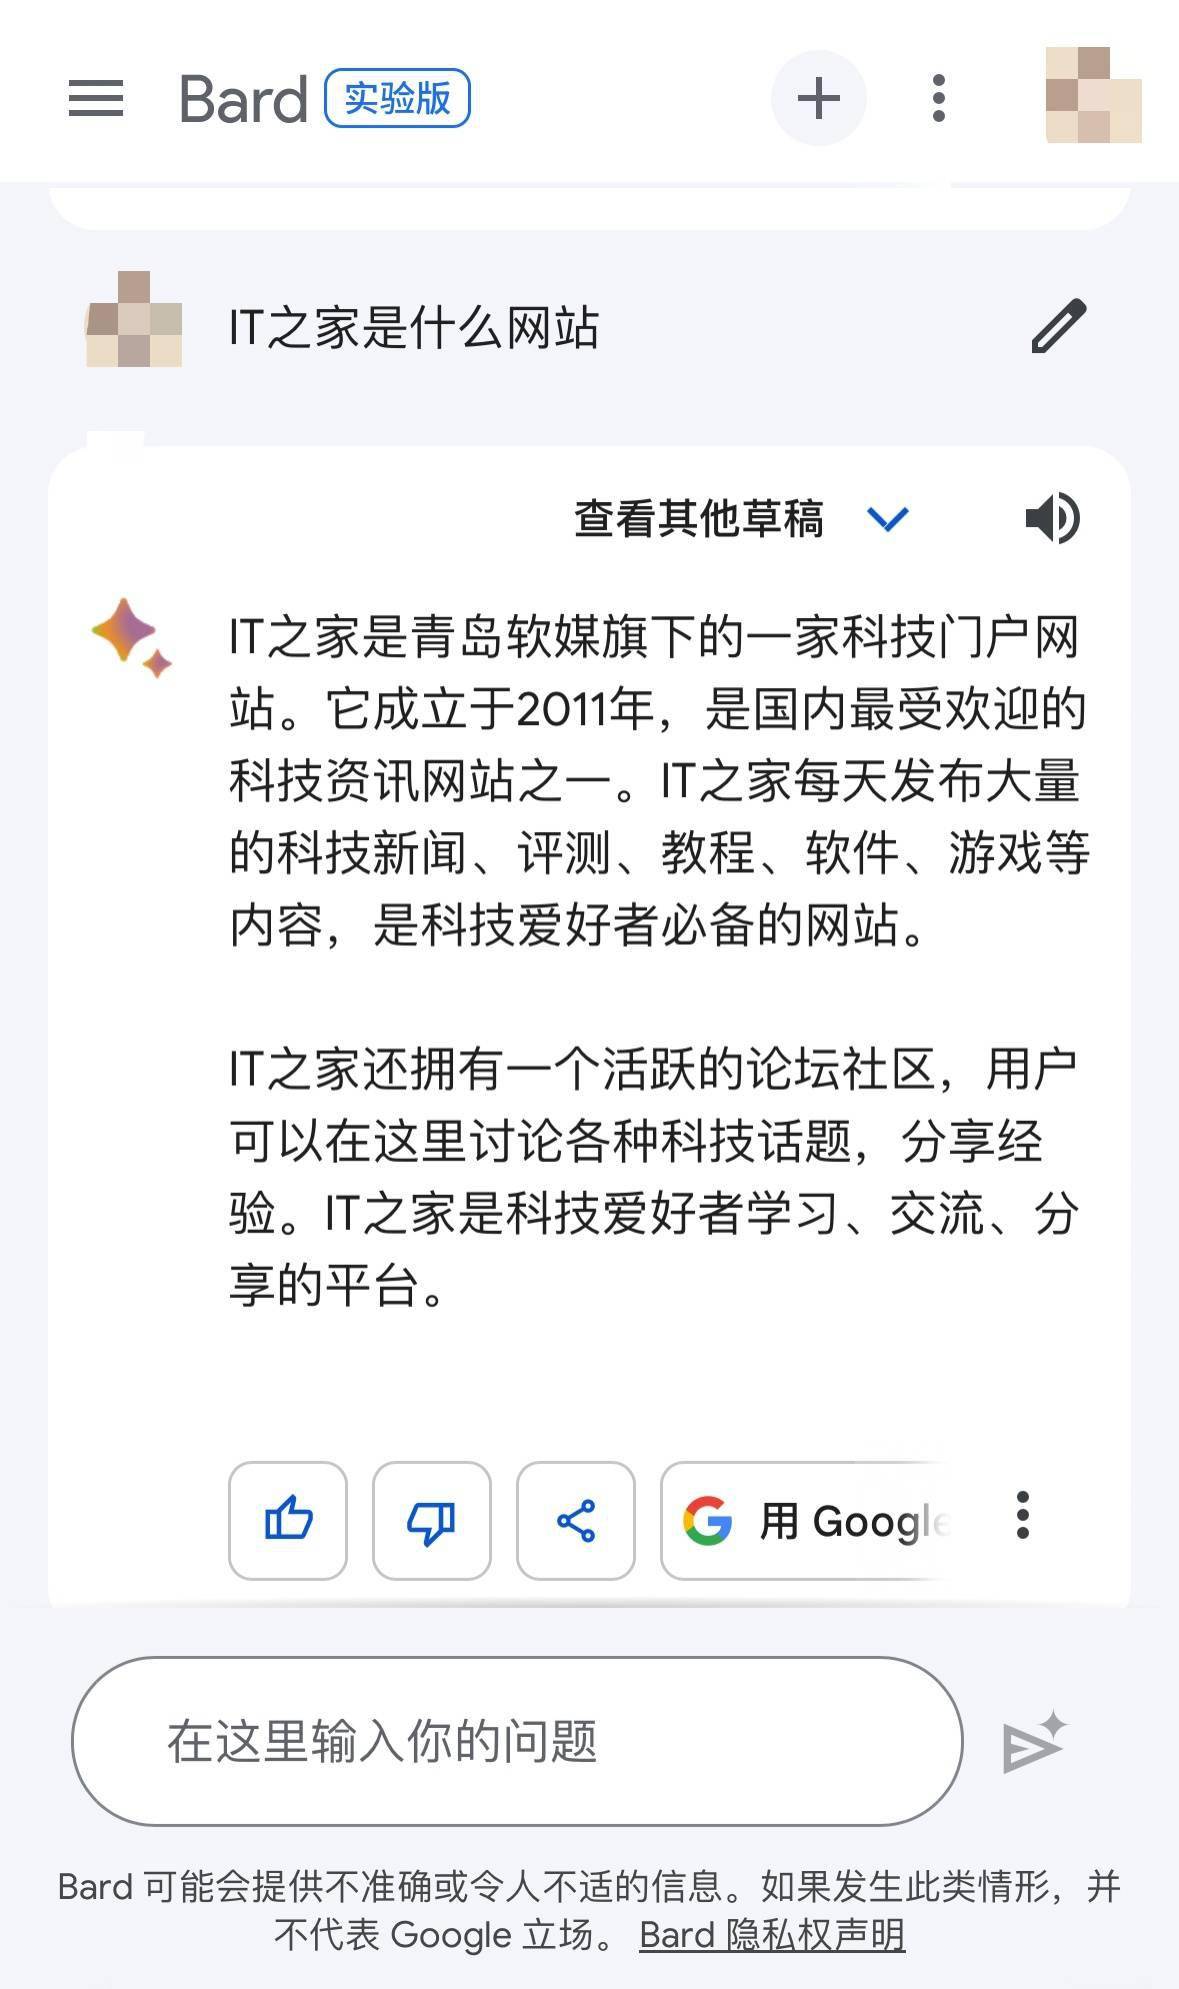 谷歌Bard AI助理现已支持简繁体中文对话 但语义理解还存在一定提升空间